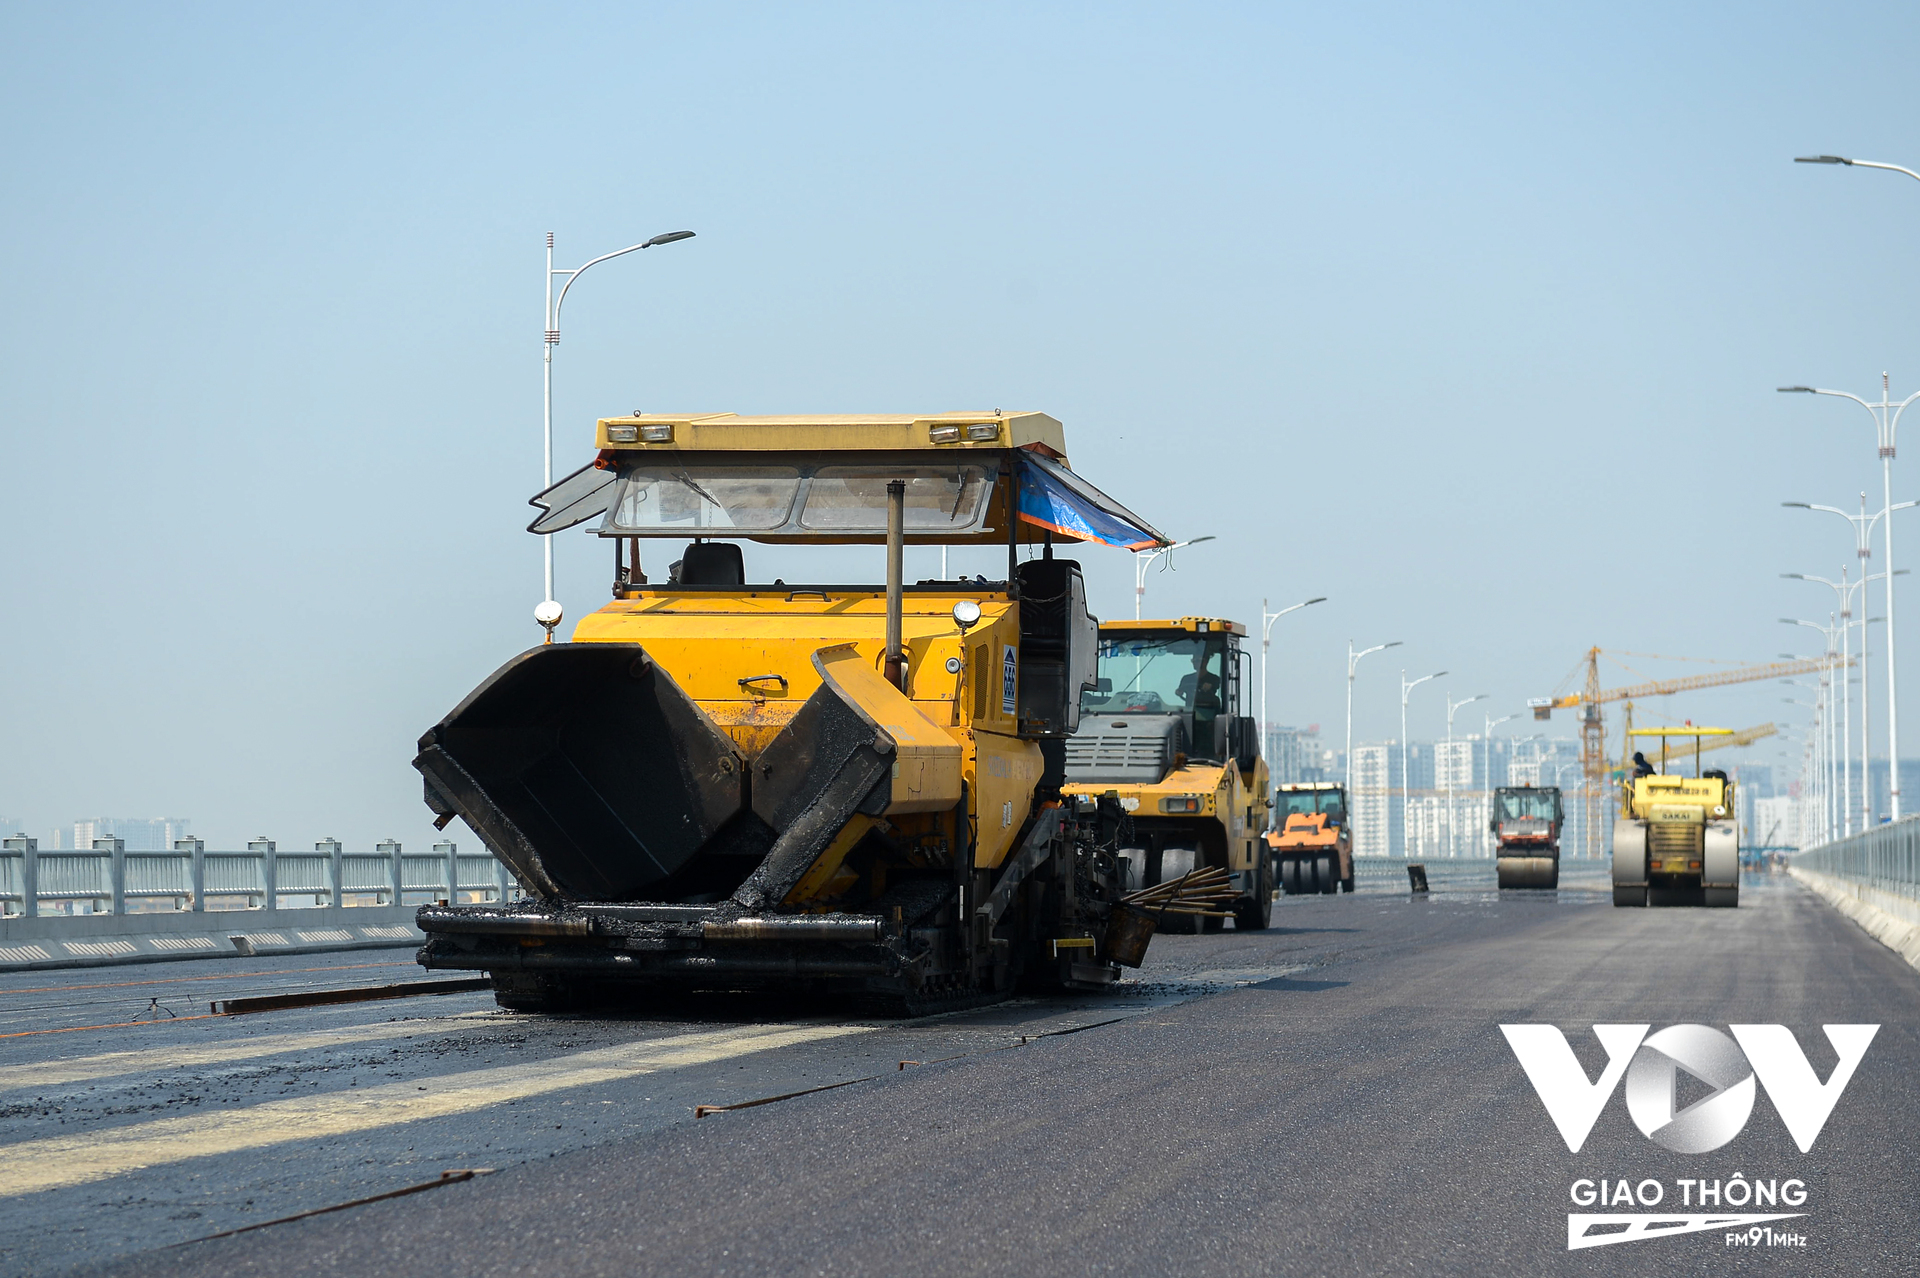 Đến nay gói thầu số 2 thuộc Dự án cầu Vĩnh Tuy, Hà Nội giai đoạn 2 với 5 gói thầu xây dựng đã hoàn thành và đang thảm nhựa. Được biết, dự án cầu Vĩnh Tuy - giai đoạn 2 được khởi công tháng 1.2021, có chiều dài và đường dẫn hơn 3,47km, mặt cắt ngang 19,3m; với tổng mức đầu tư hơn 2.500 tỉ đồng. Dự án có điểm đầu giao với đường Nguyễn Khoái và phố Minh Khai, điểm cuối giao với đường Long Biên - Thạch Bàn, đường Cổ Linh.